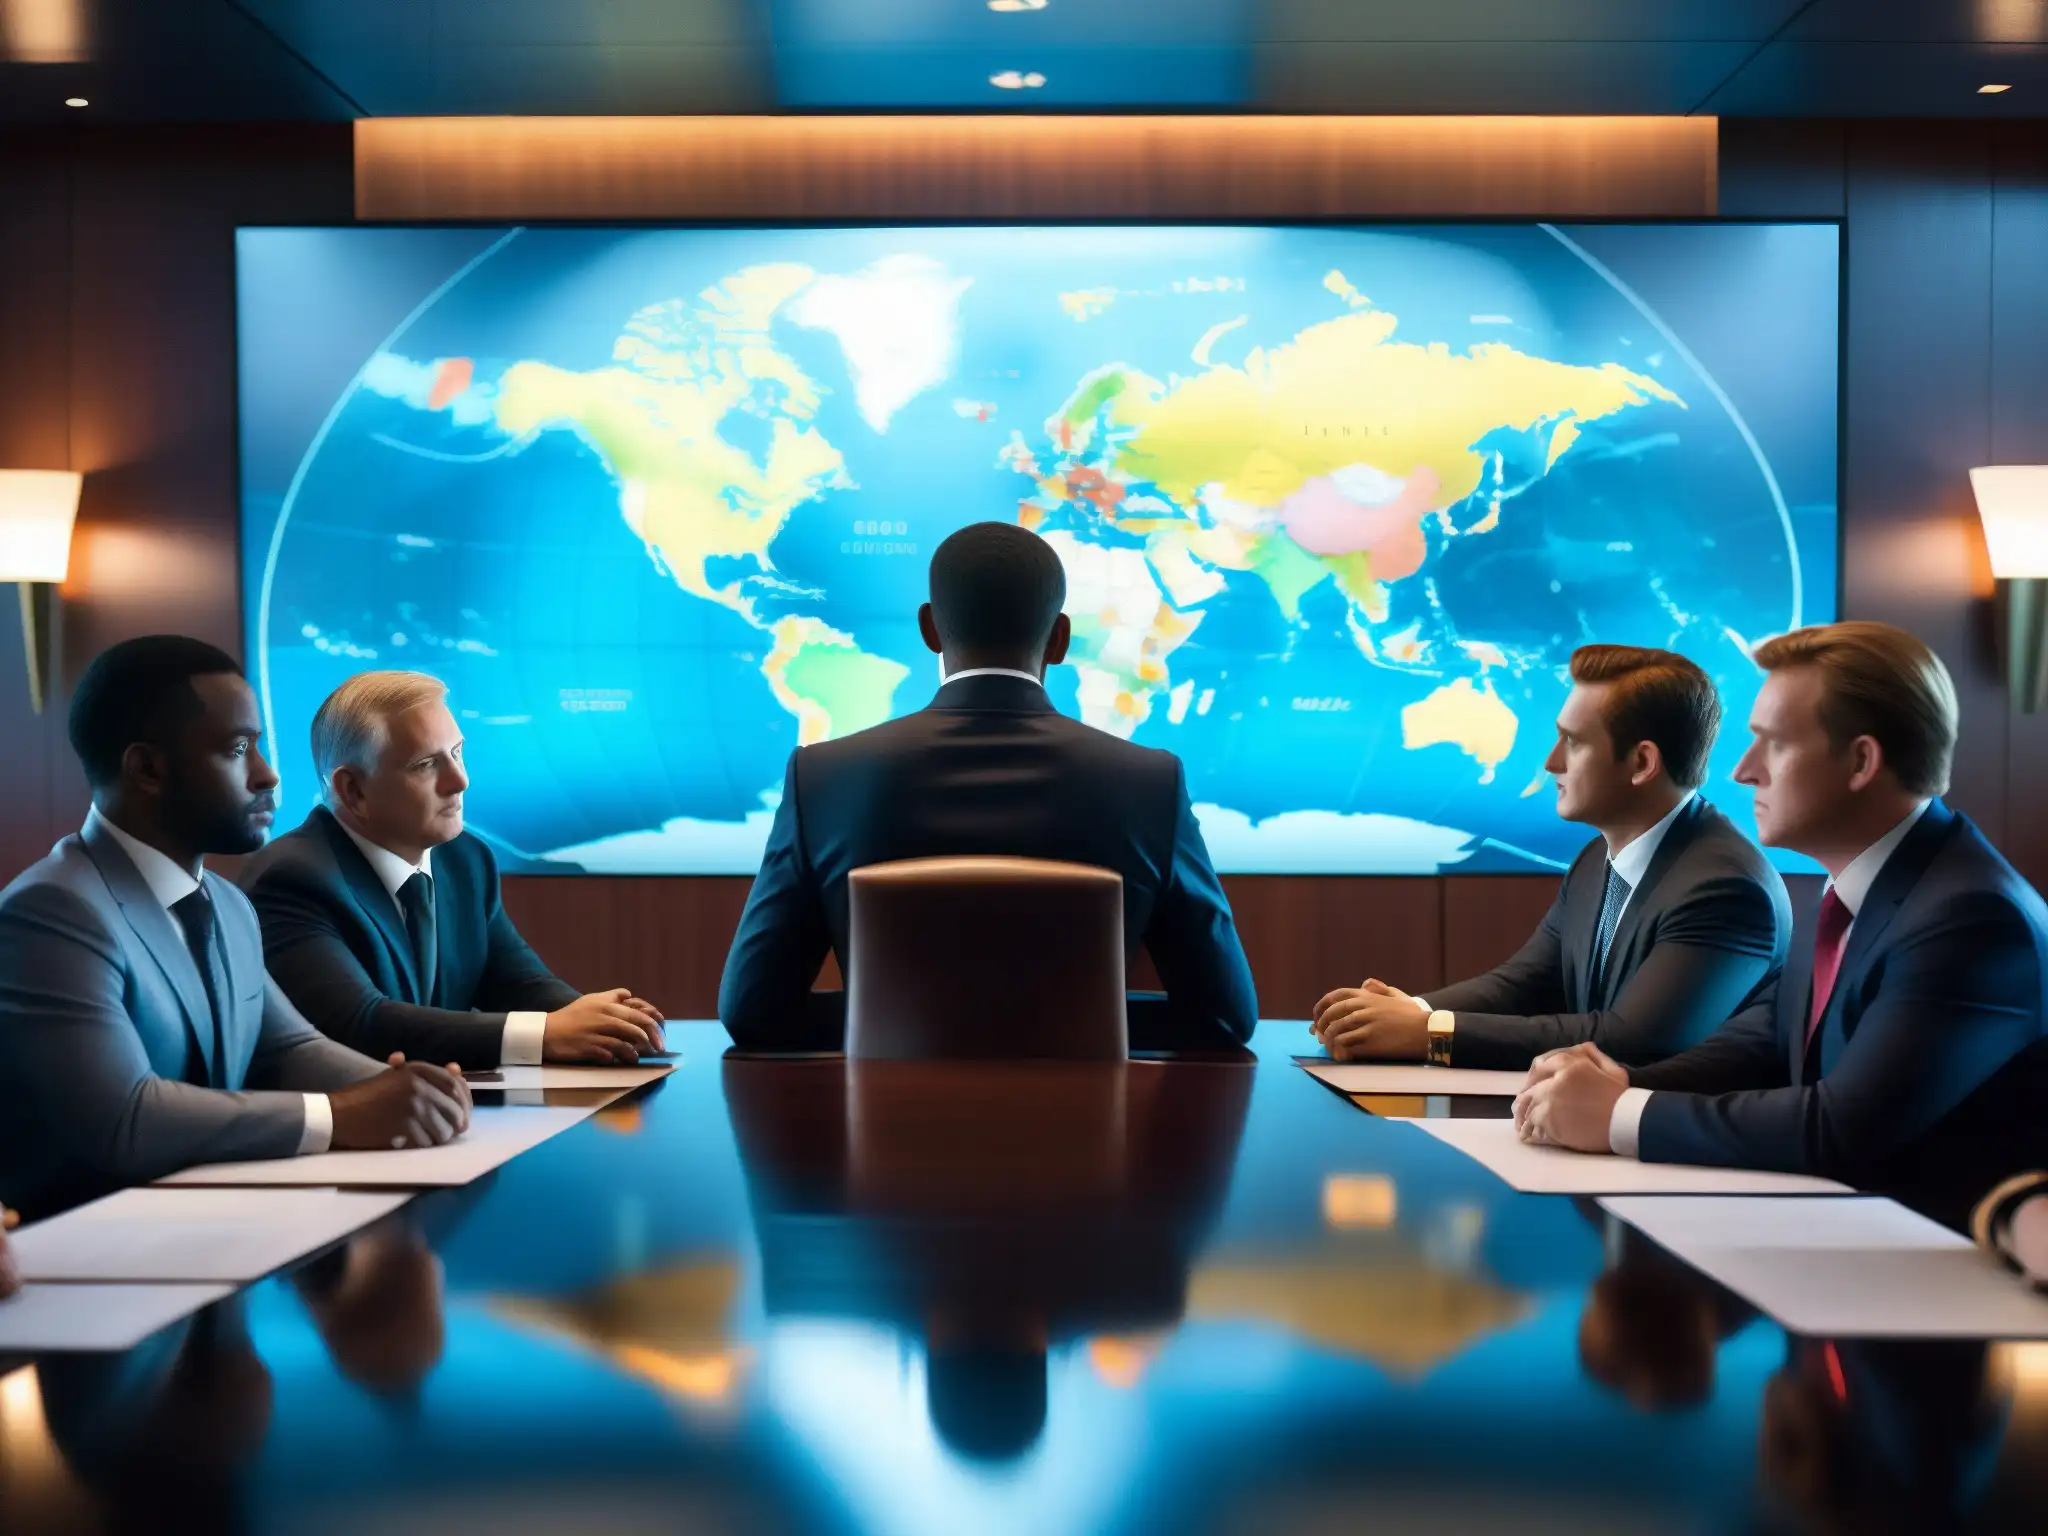 Reunión secreta en Club Bilderberg, figuras en traje en torno a una mesa de conferencias, mapa del mundo iluminado